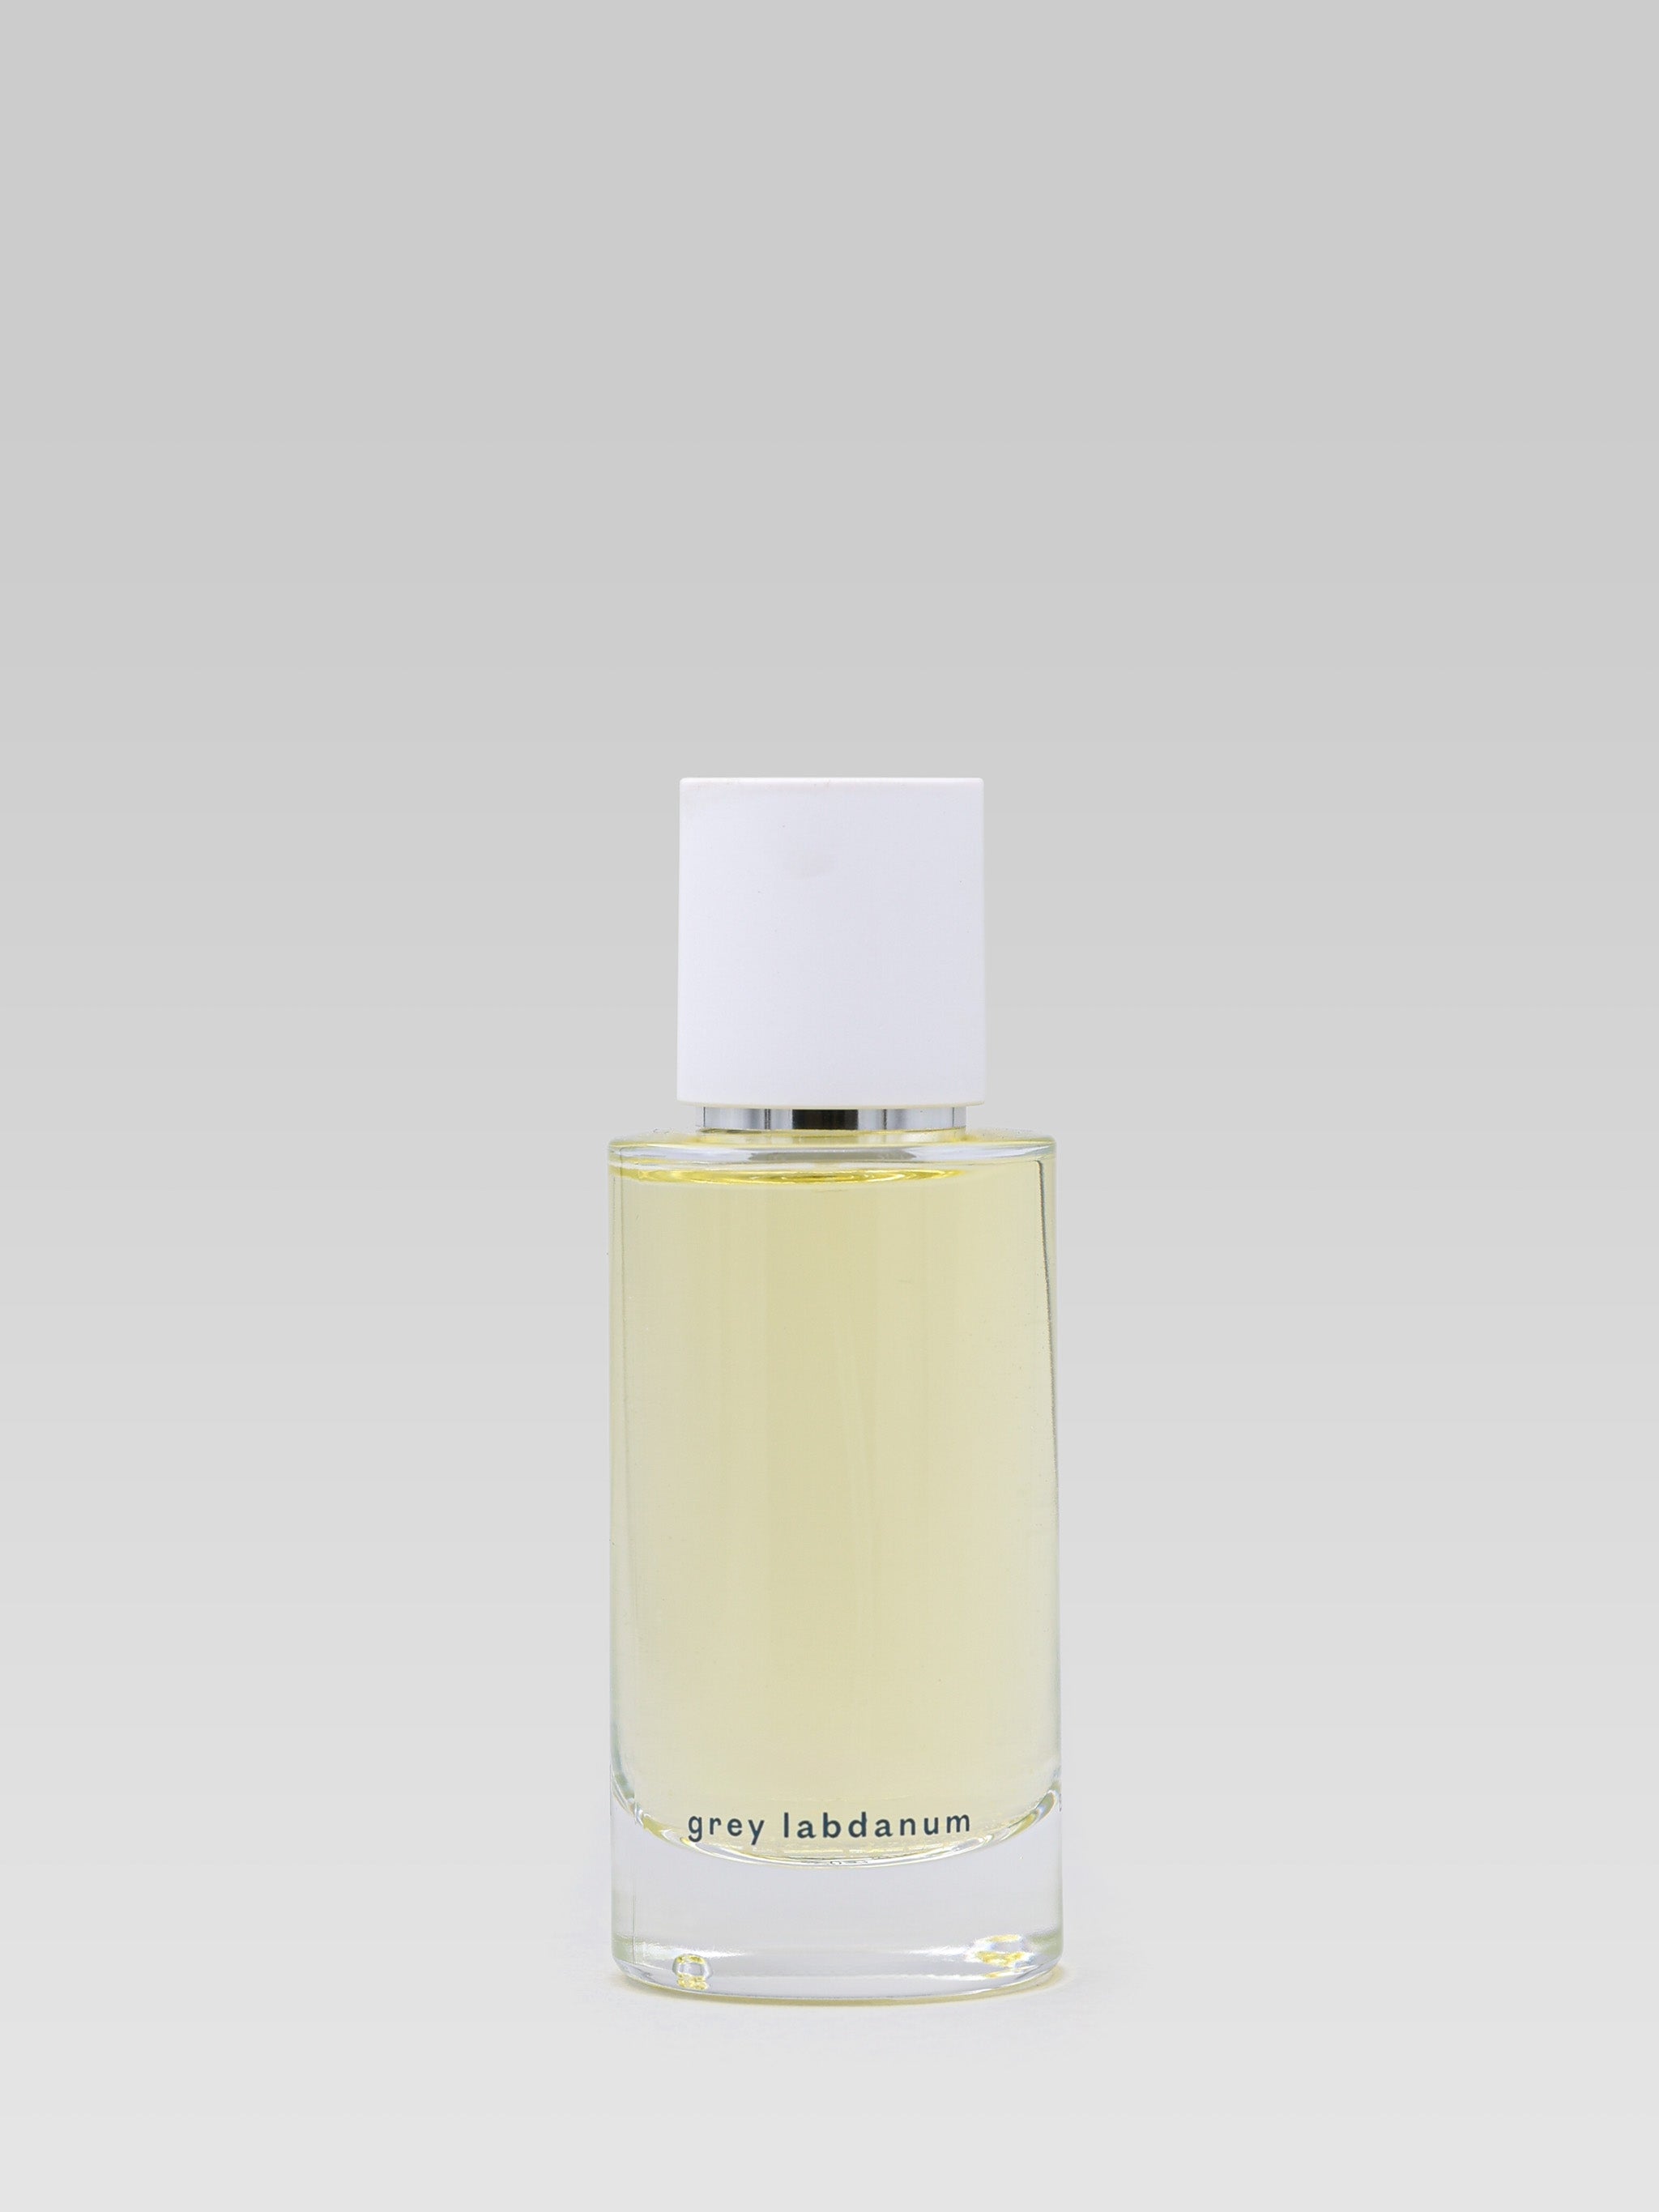 Abel Odor Parfum Grey Labdanum product shot 